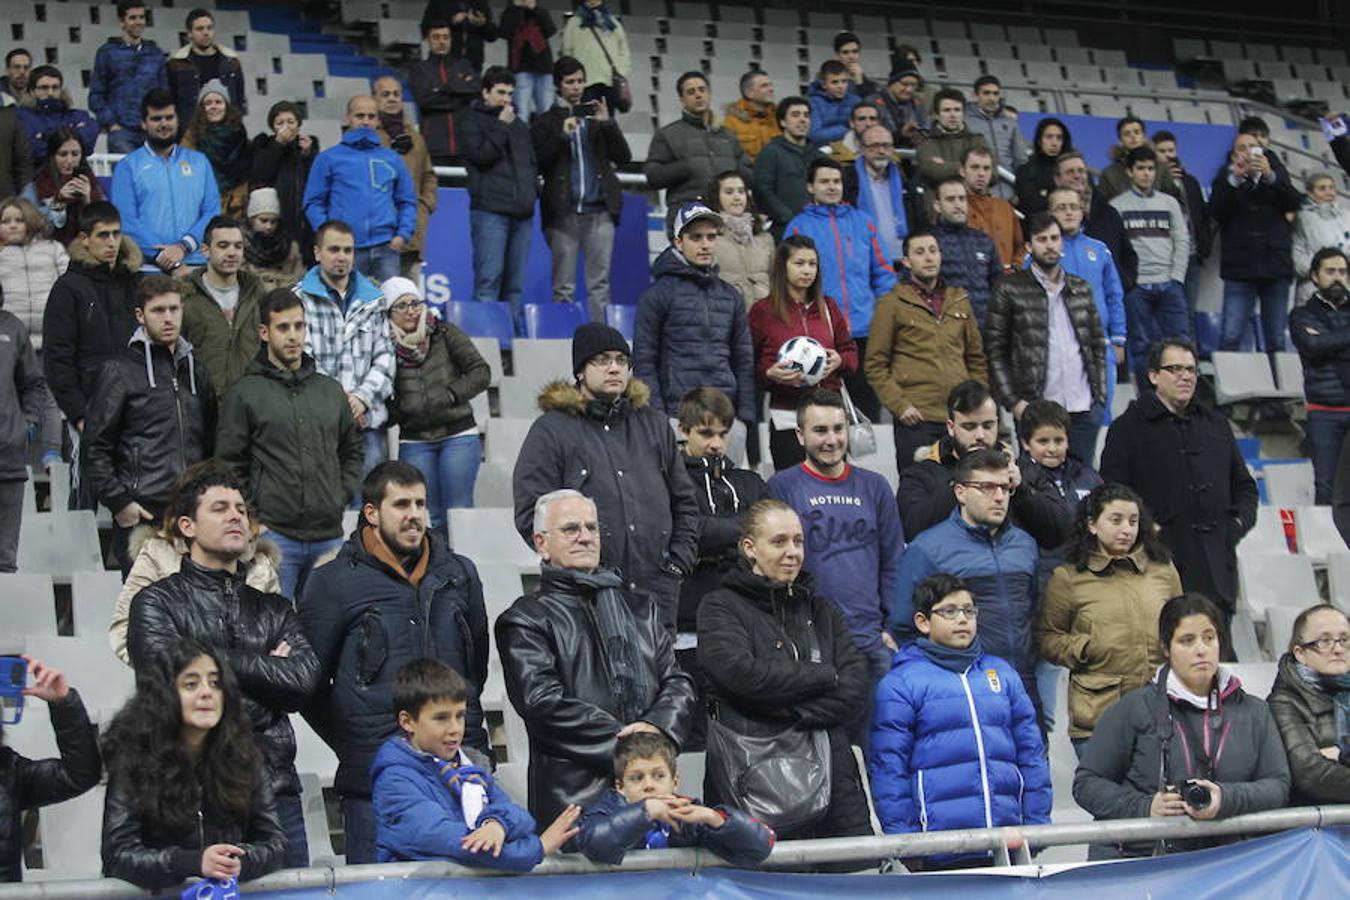 Presentación de Saúl Berjón como nuevo jugador del Real Oviedo